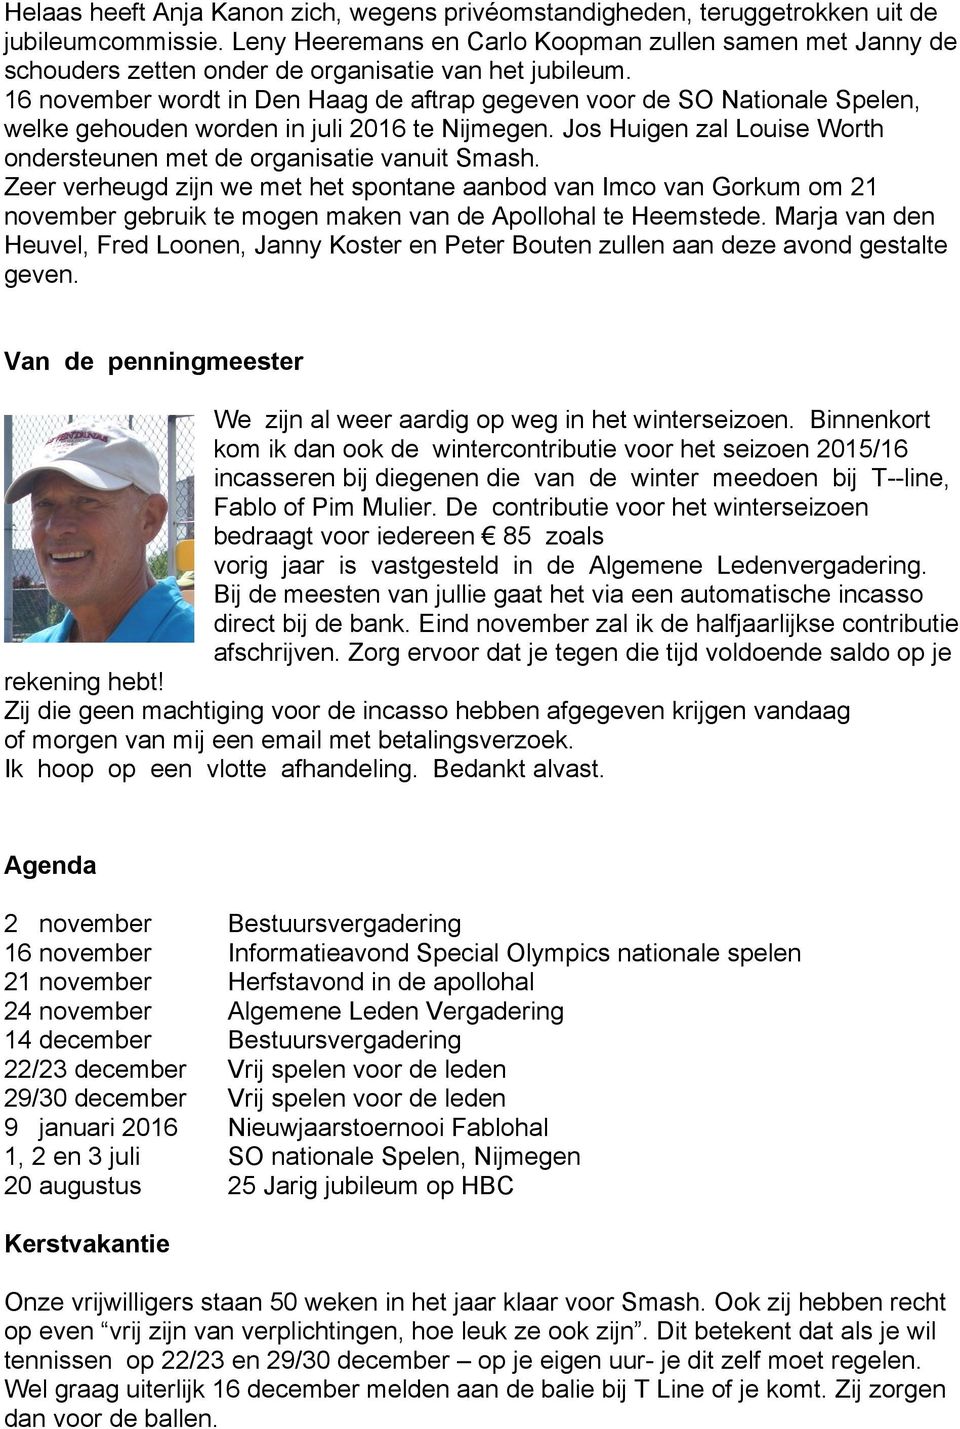 16 november wordt in Den Haag de aftrap gegeven voor de SO Nationale Spelen, welke gehouden worden in juli 2016 te Nijmegen. Jos Huigen zal Louise Worth ondersteunen met de organisatie vanuit Smash.